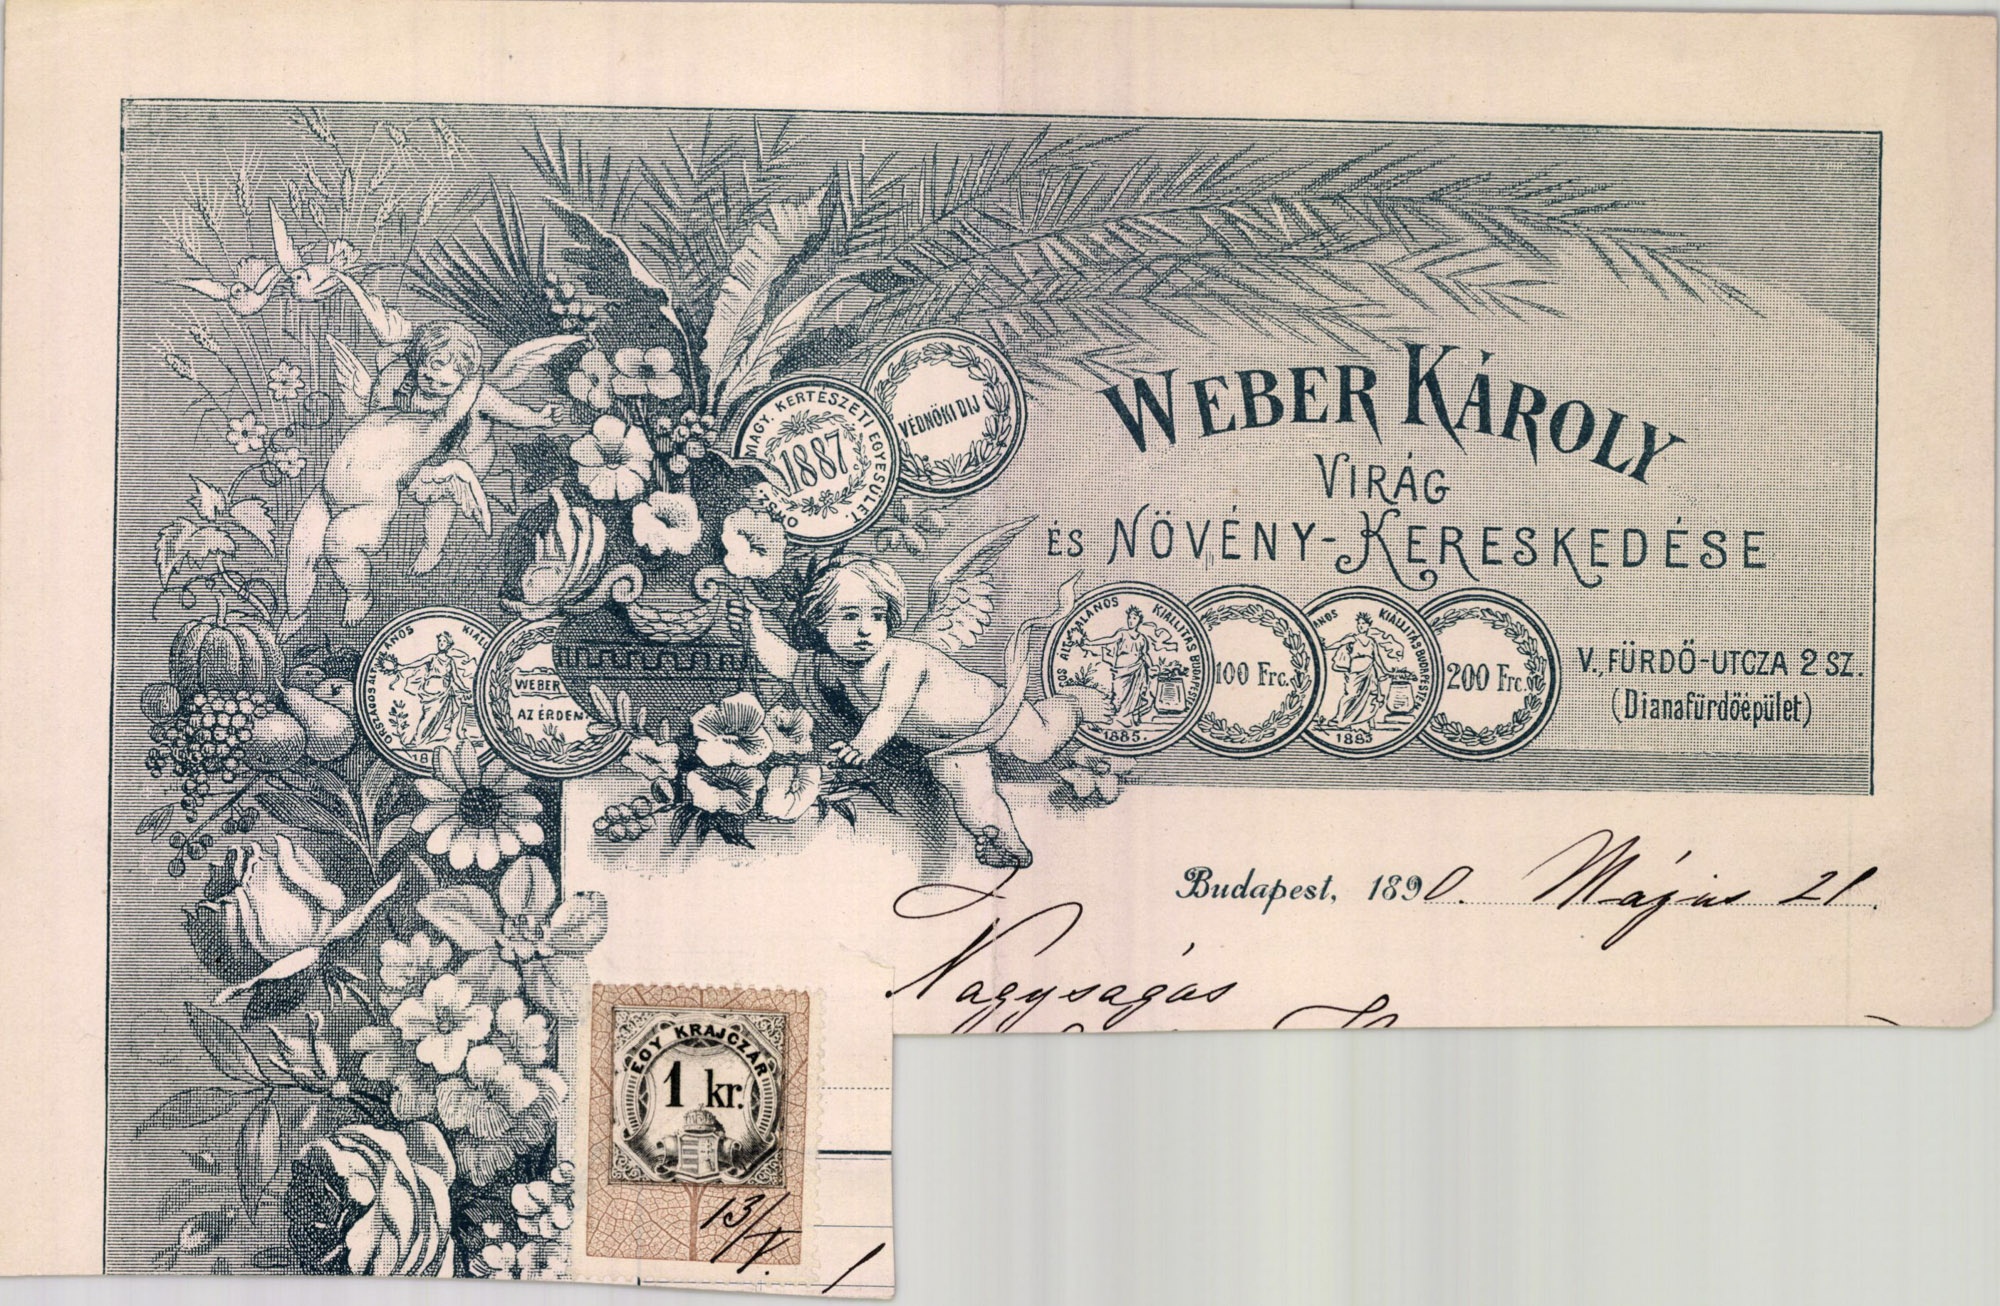 Weber Károly virág- és növény-kereskedése (Magyar Kereskedelmi és Vendéglátóipari Múzeum CC BY-NC-SA)